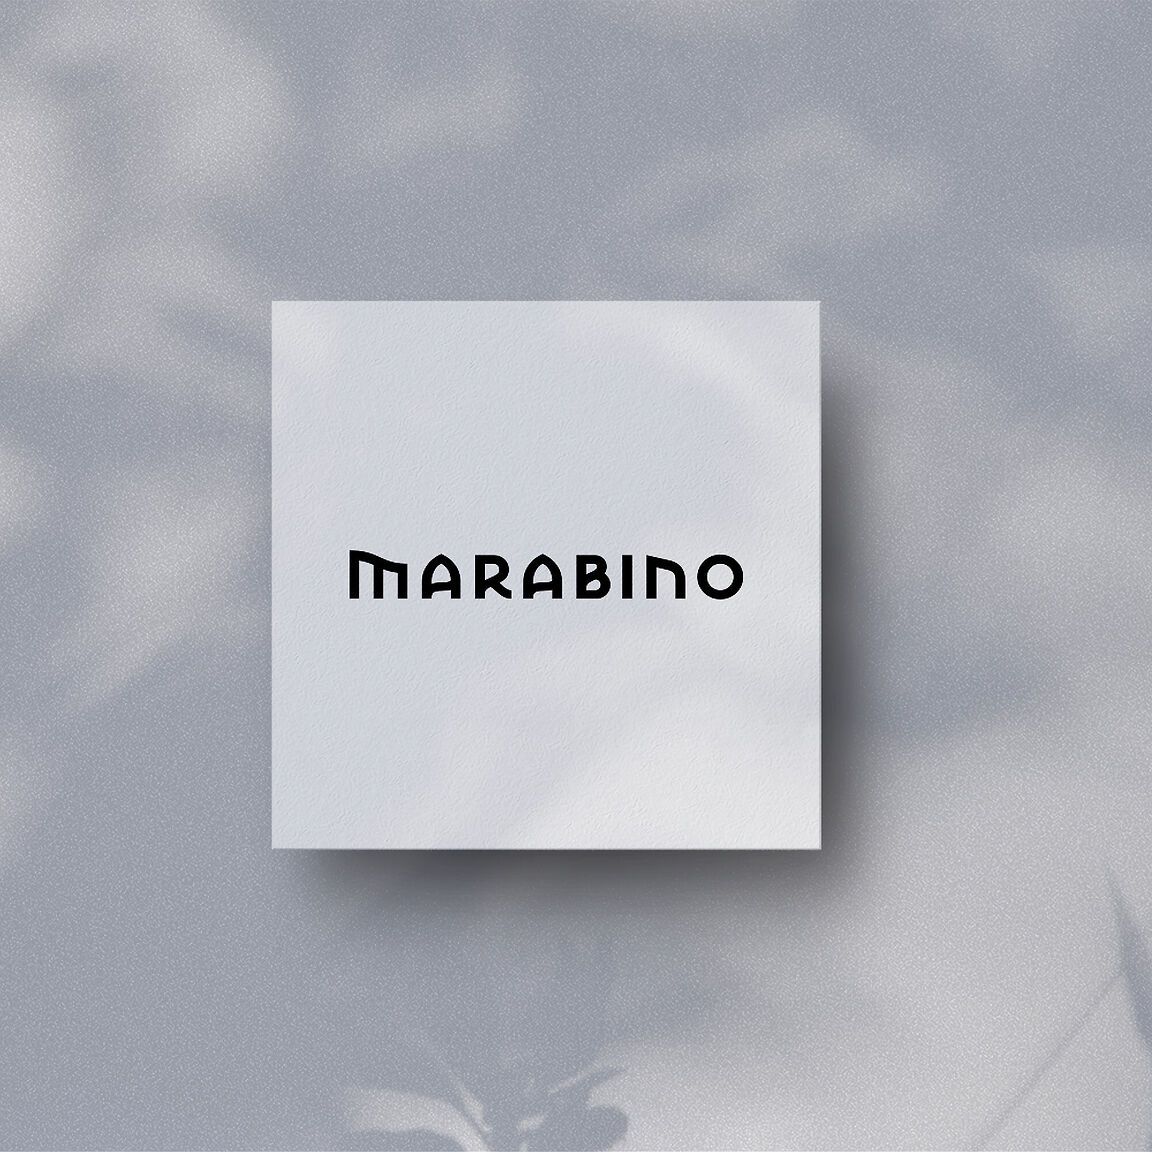 Brand Identity Marabino